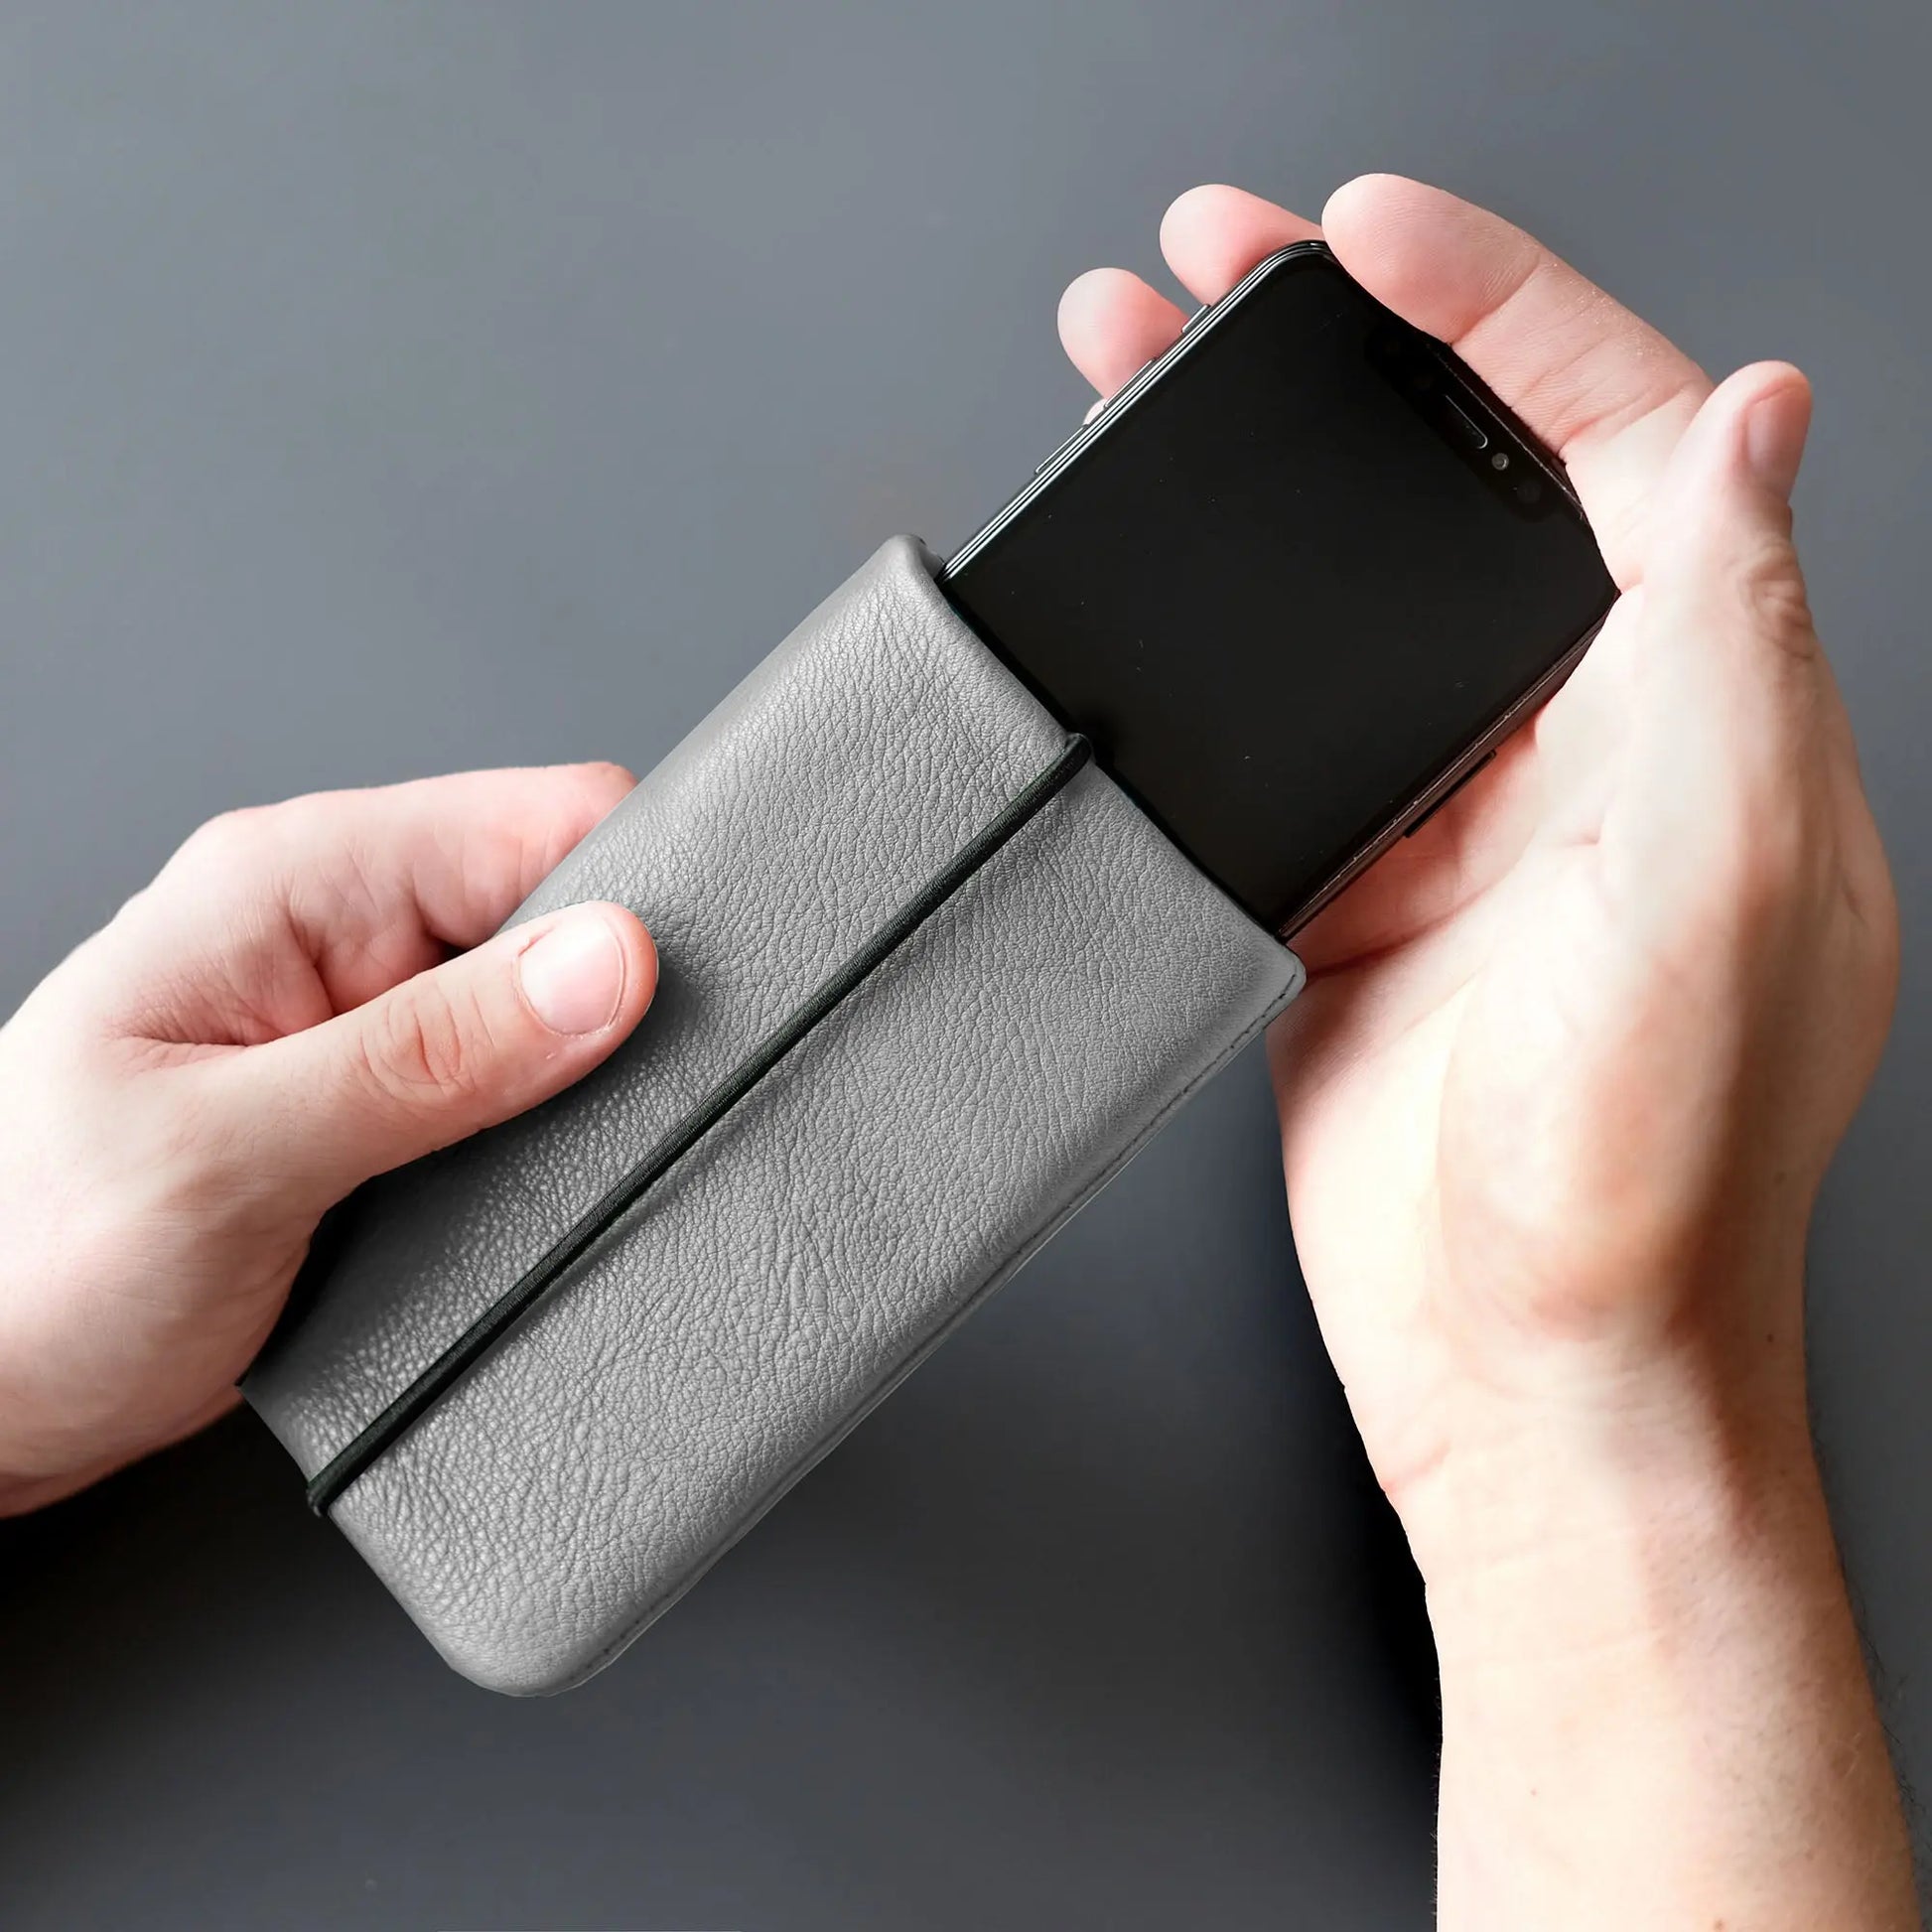 iPhone wird mit zwei Händen in graue Lederhülle geschoben